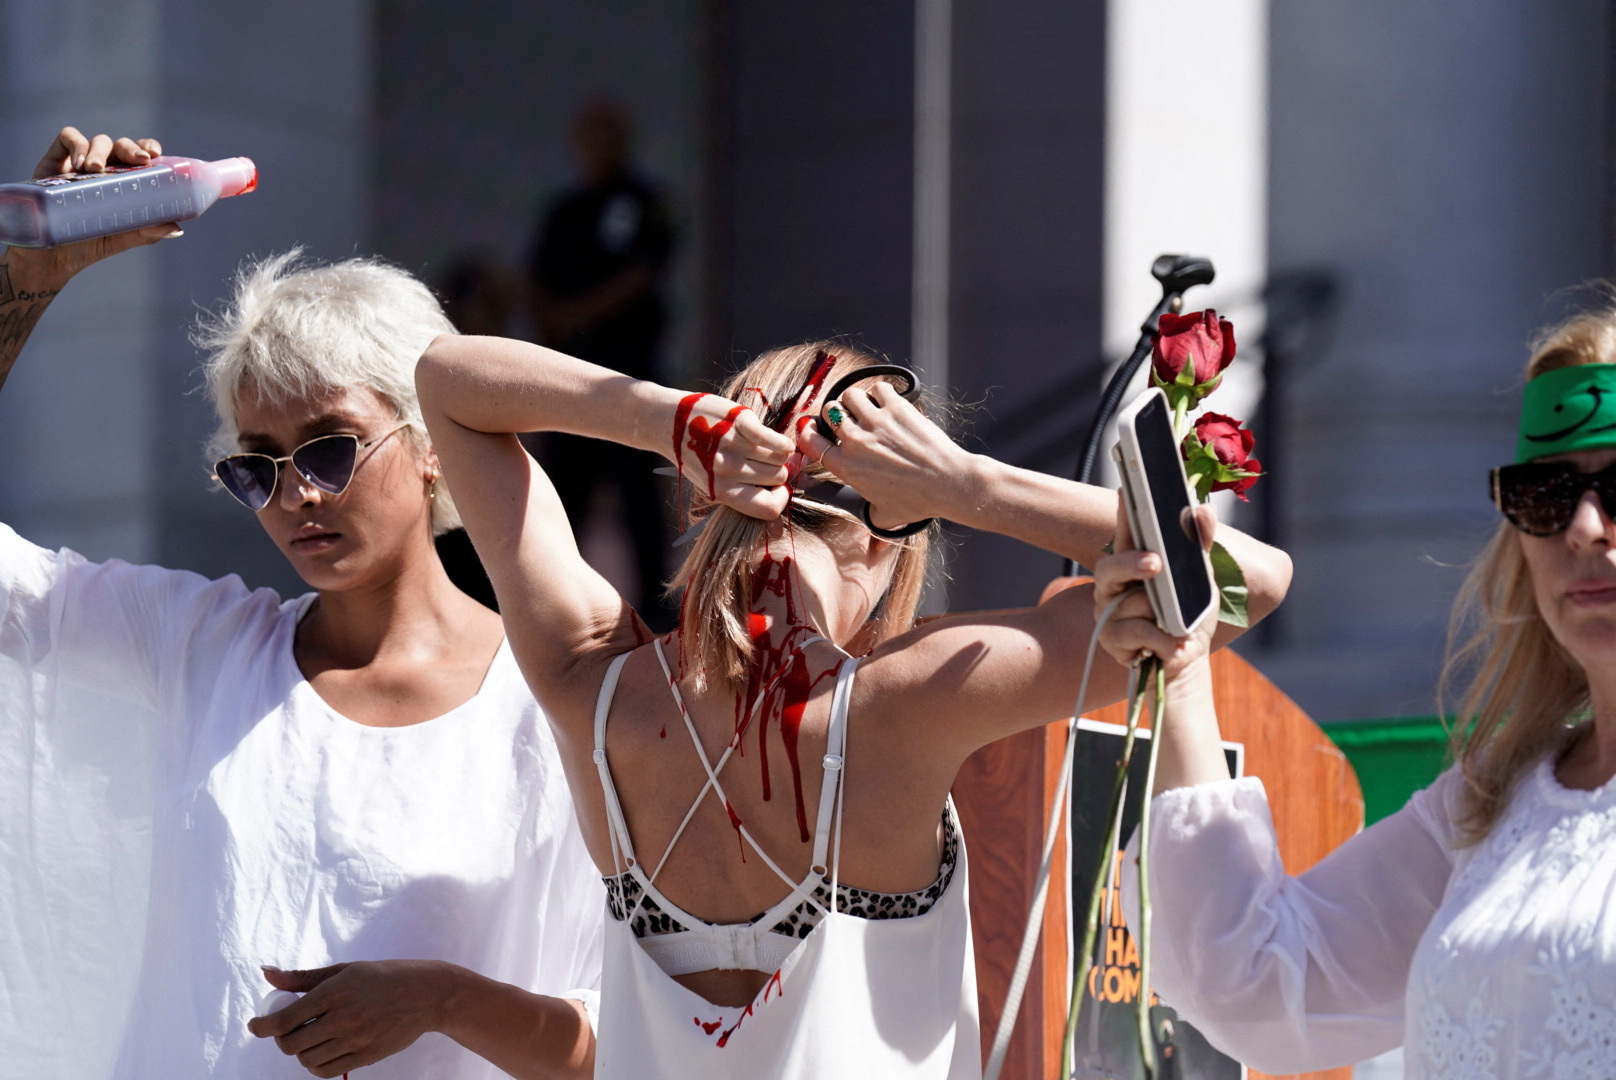 La activista bielorrusa Yadviga Krasovskaya se corta el pelo mientras la artista y activista iraní-estadounidense Samy Rose Moshiri se prepara para empaparse de sangre falsa en una concentración por la libertad de Irán, en protesta por el apoyo a las mujeres iraníes y contra la muerte de Mahsa Amini, frente al Ayuntamiento de Los Ángeles, California, Estados Unidos, 1 de octubre de 2022.  REUTERS/Bing Guan